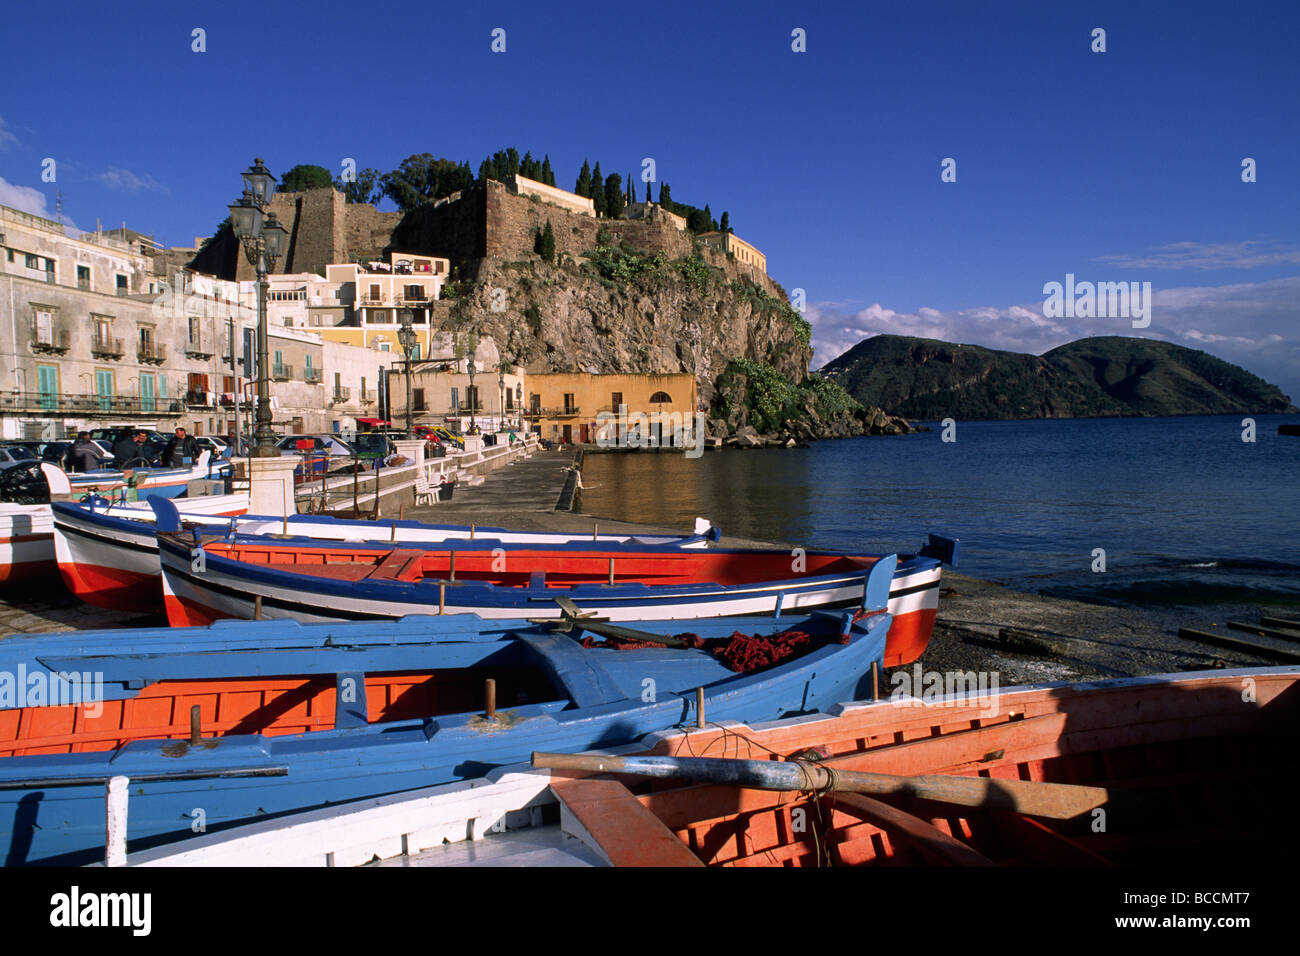 Italie, Sicile, îles éoliennes, île de Lipari, port, bateaux de pêche Banque D'Images